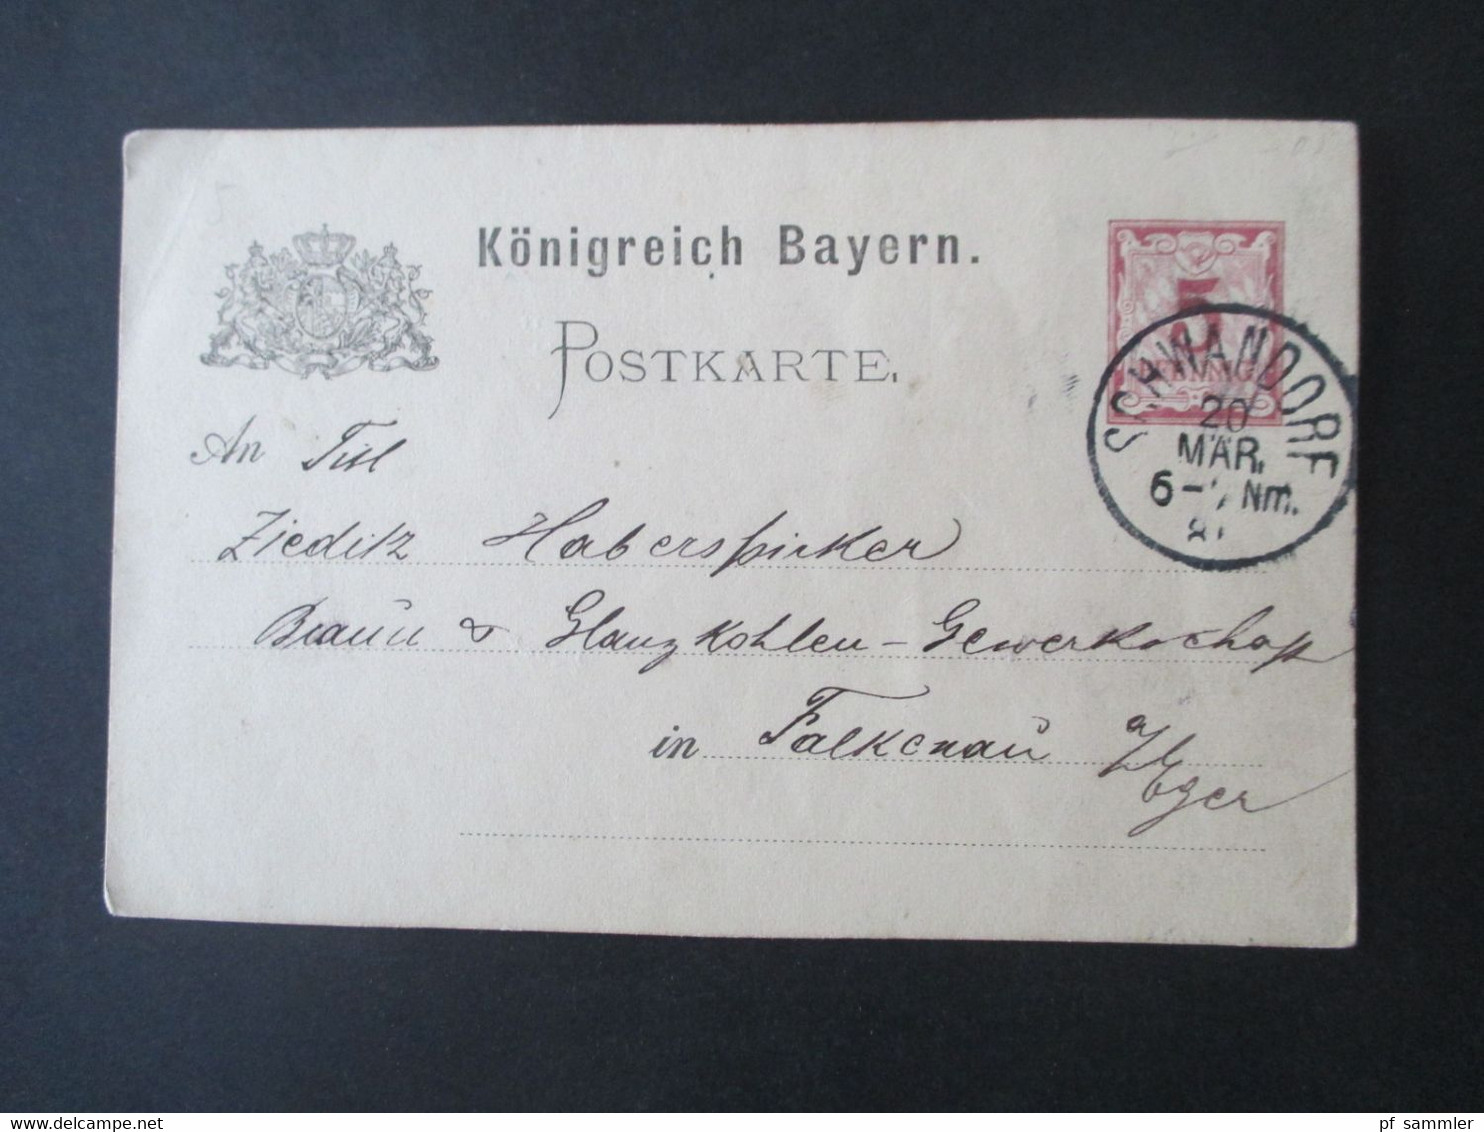 AD Bayern Ganzsachen Posten ab ca. 1875 insgesamt 30 Stück. Stöberposten! Auch Bahnpost Stp. und 1x Doppelkarte